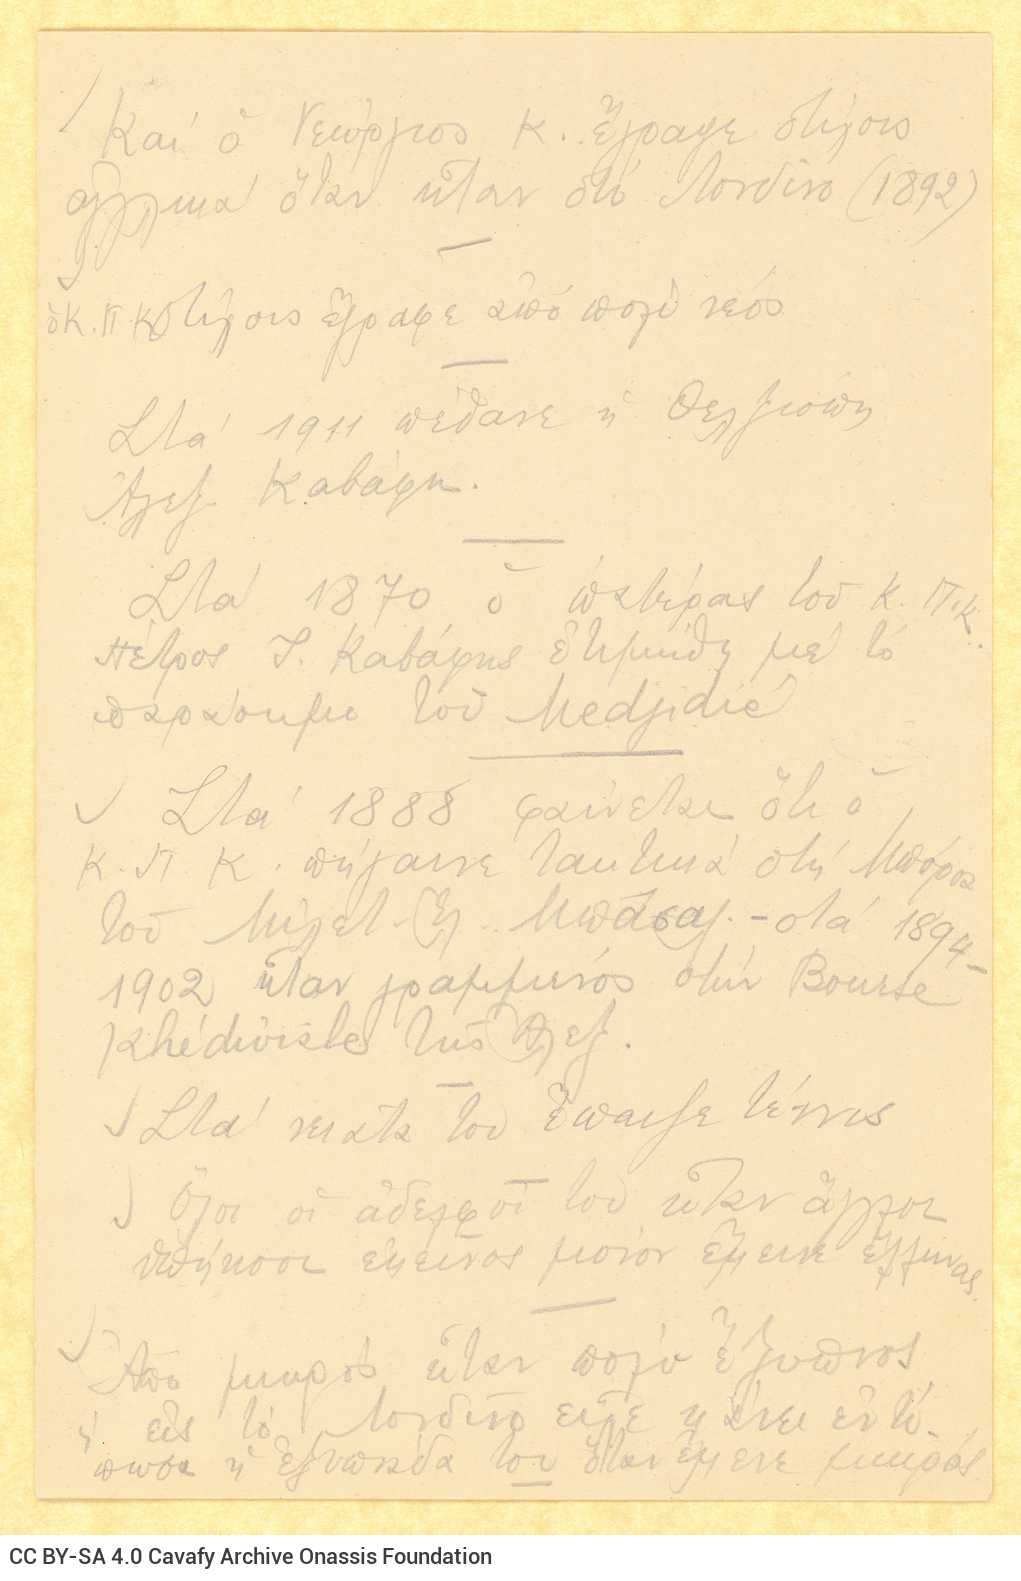 Χειρόγραφες σημειώσεις της Ρίκας Σεγκοπούλου σε επτά φύλλα και σε τ�